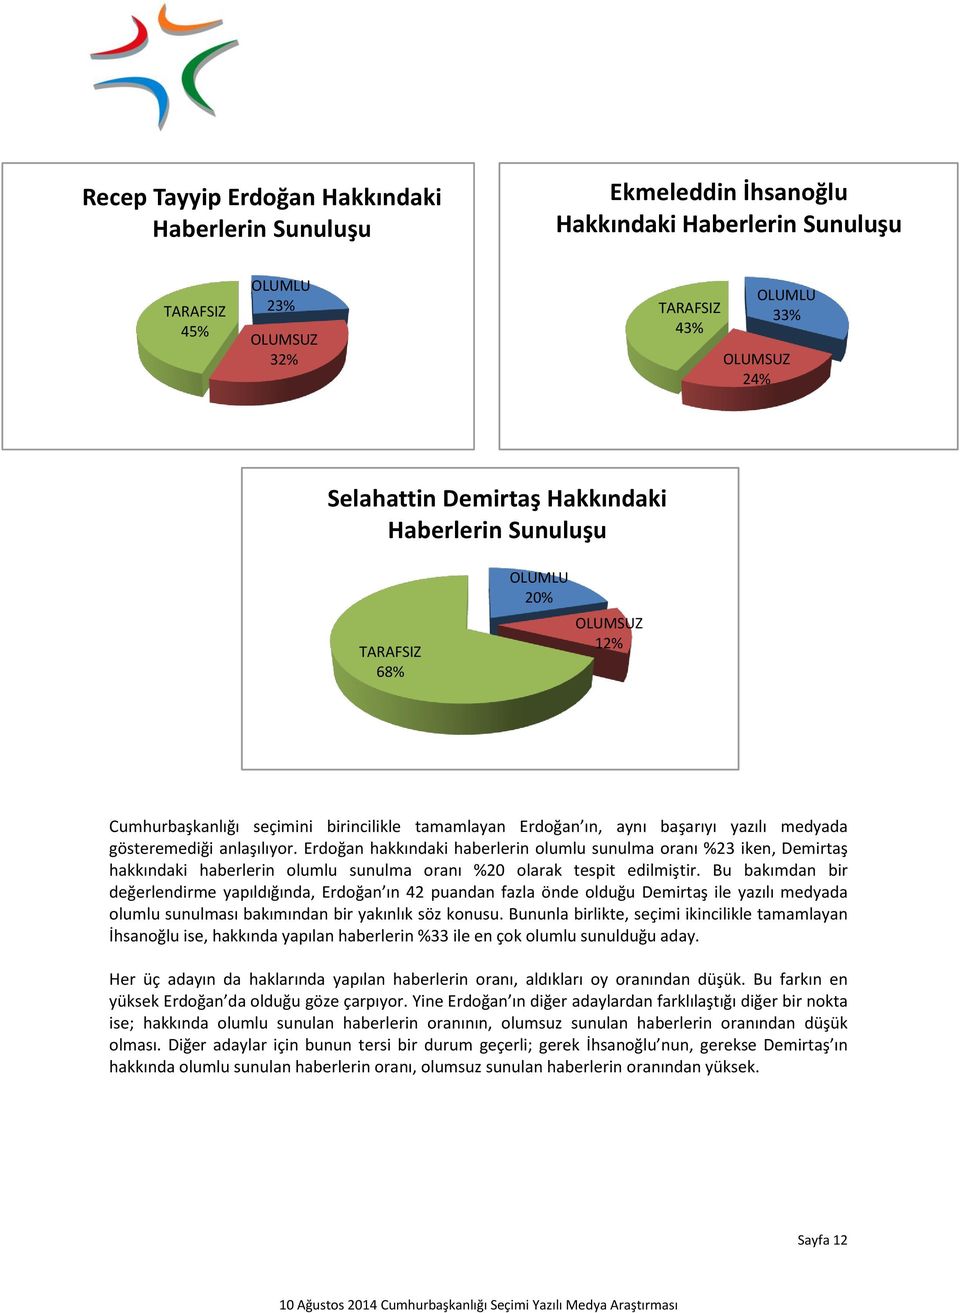 Erdoğan hakkındaki haberlerin olumlu sunulma oranı %23 iken, Demirtaş hakkındaki haberlerin olumlu sunulma oranı %20 olarak tespit edilmiştir.